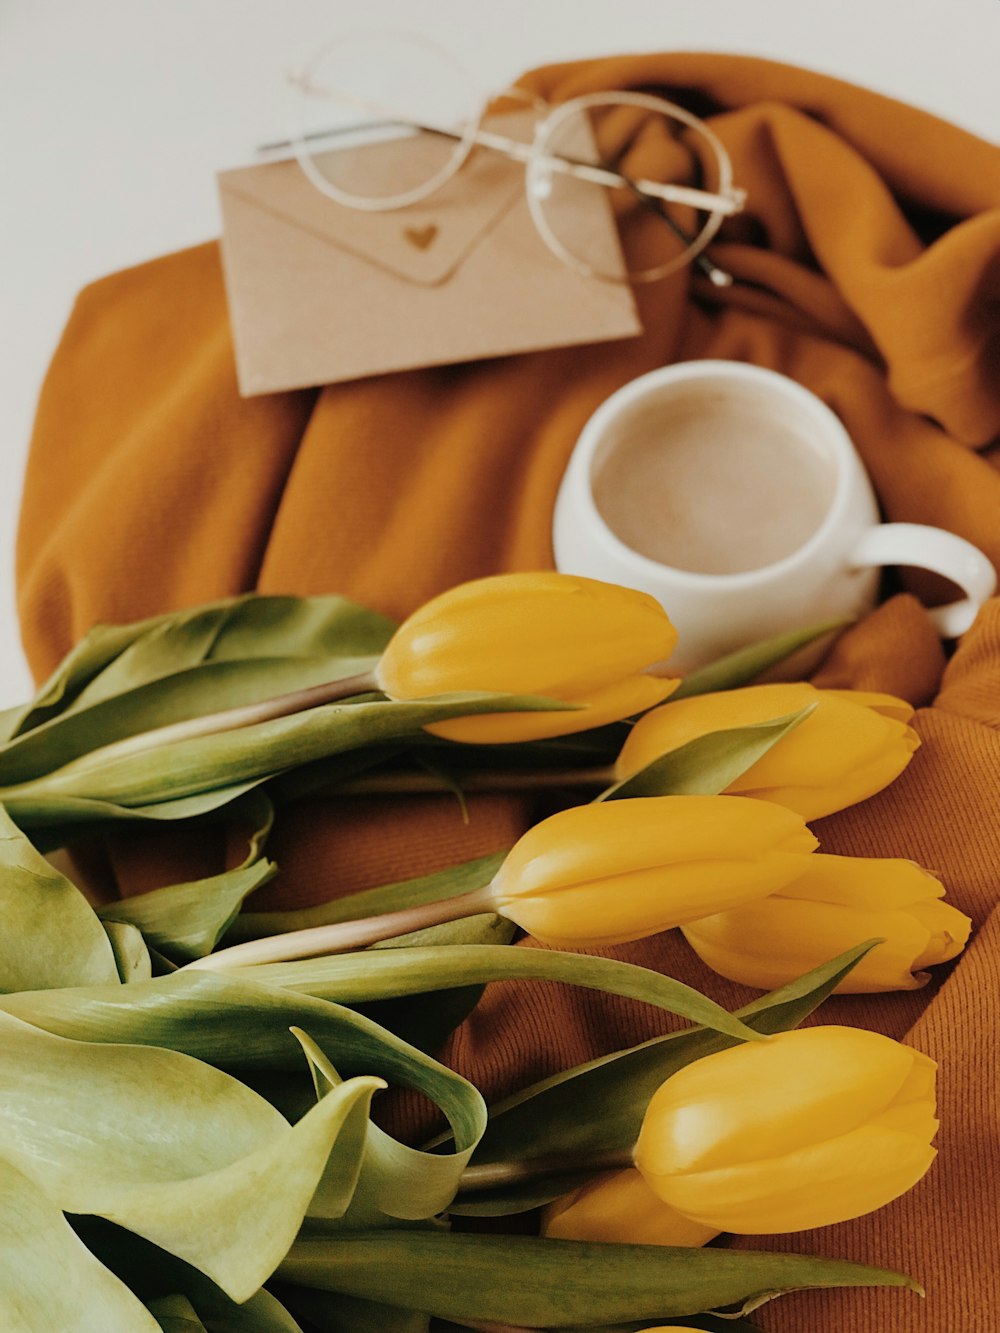 yellow tulip flowers near white ceramic mug, brown envelope, and gold framed eyeglasses